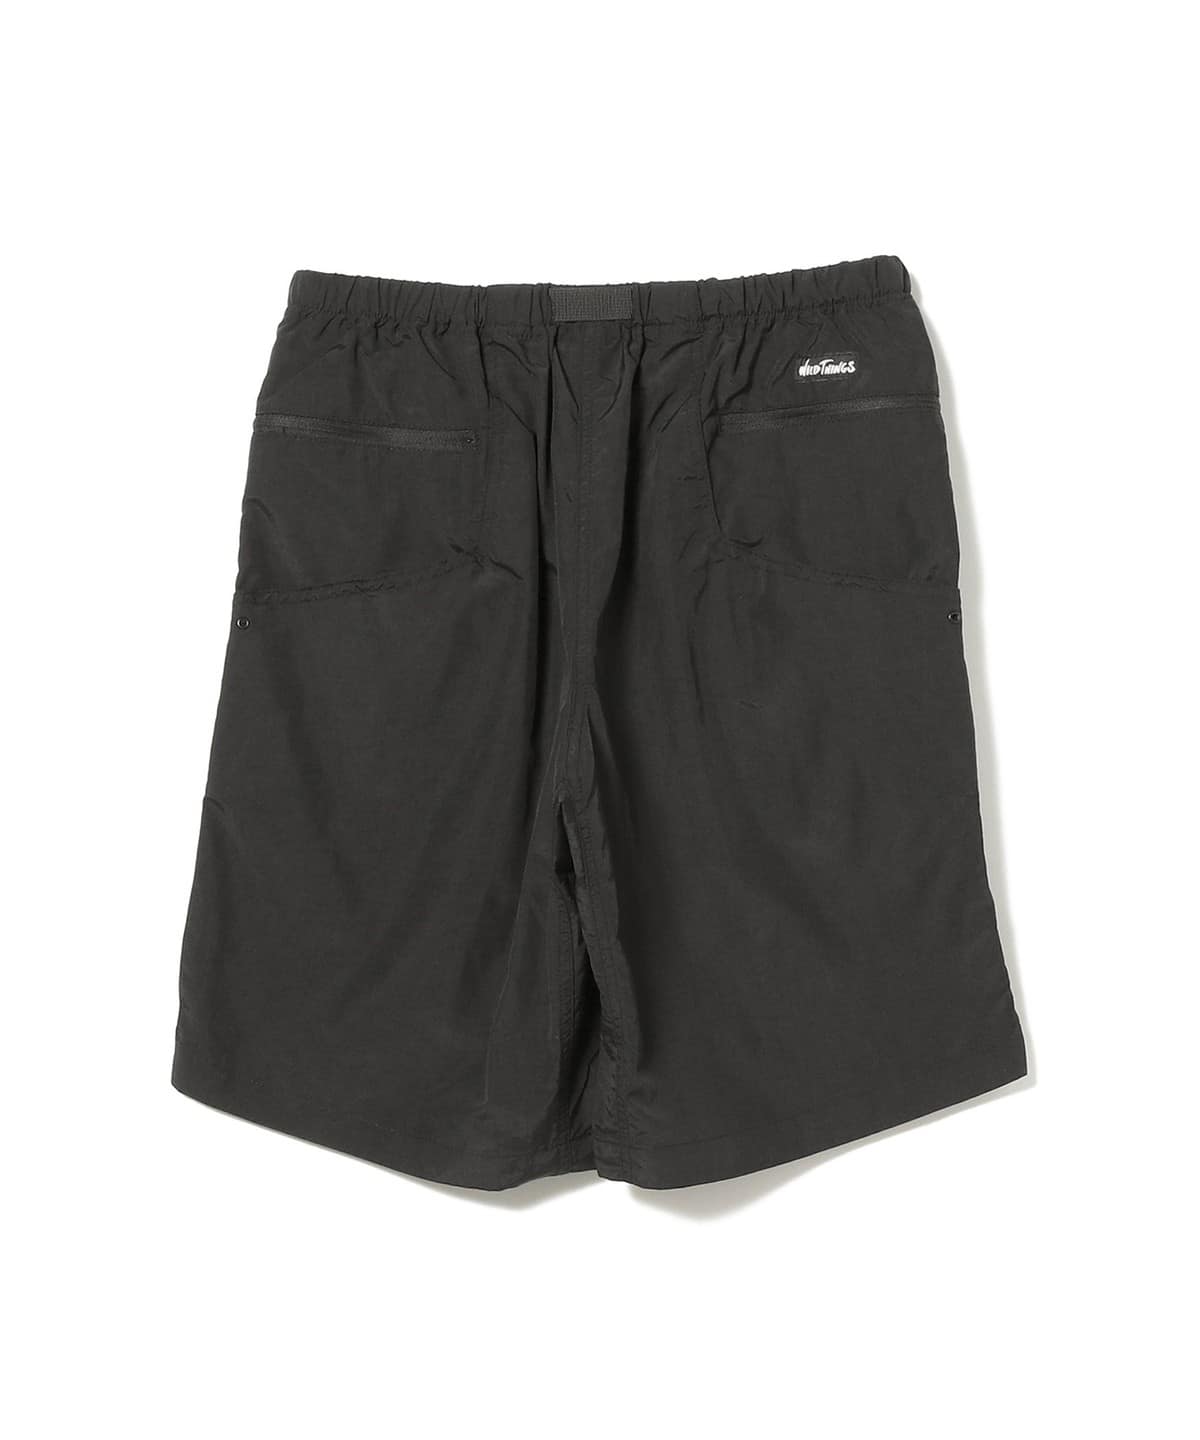 BEAMS [BEAMS] WILD THINGS / Supplex Camp Shorts (Pants Shorts